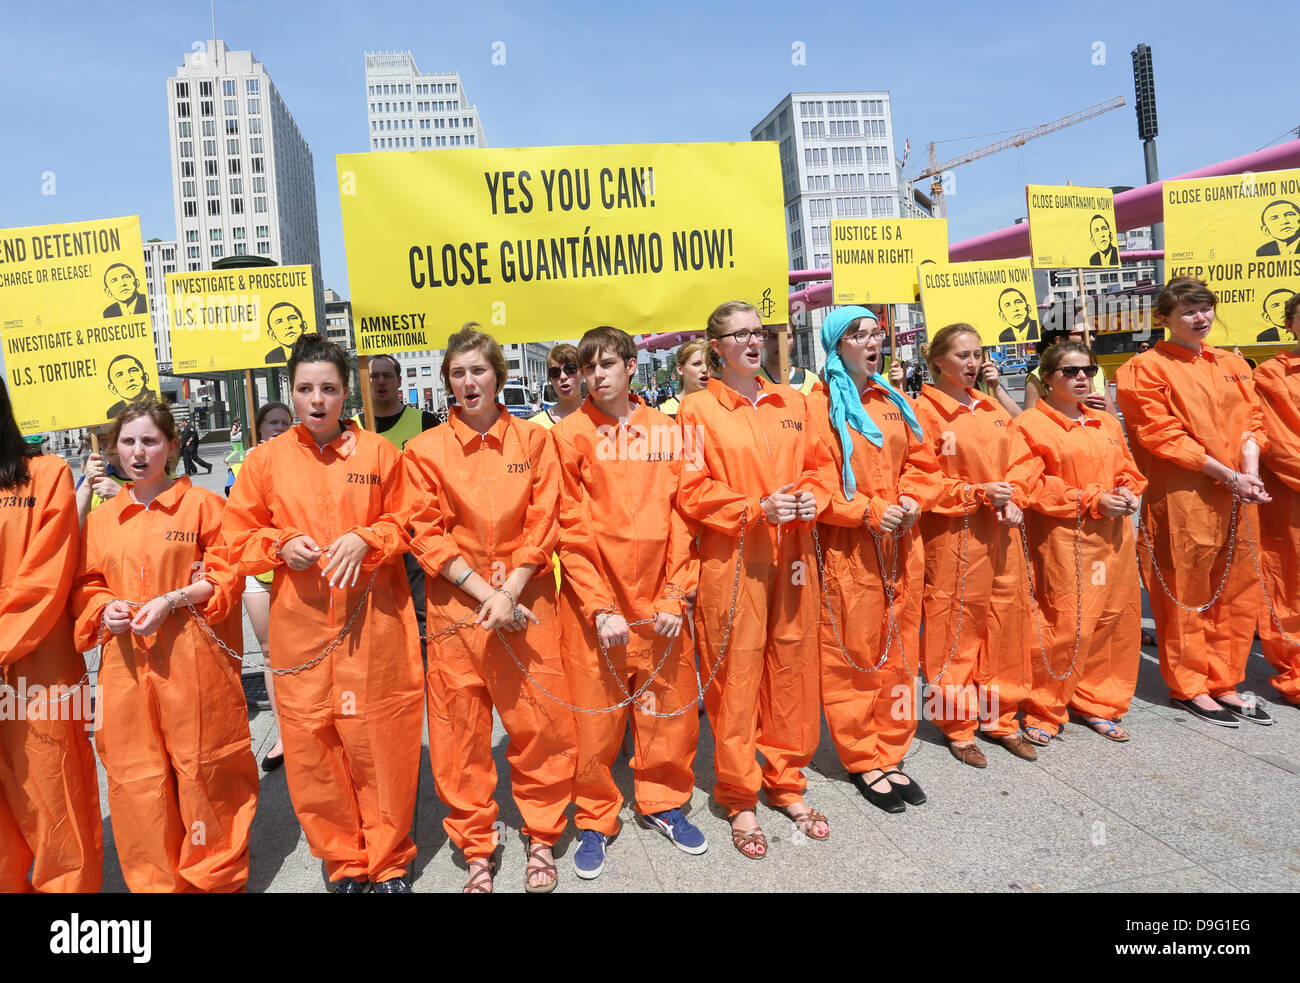 "Ja, Sie können! Schließen Guantanamo jetzt! "ist auf ein transparentes während einer Demonstration von Amnesty international während des Besuchs von US-Präsident Barak Obama in Berlin, Deutschland 19 lesbar. Juni 2013. Foto: Stephanie Pilick/Dpa/Dpa/Alamy Live News/Dpa/Alamy Live News/Dpa/Alamy Live News/Dpa/Alamy Live News Stockfoto